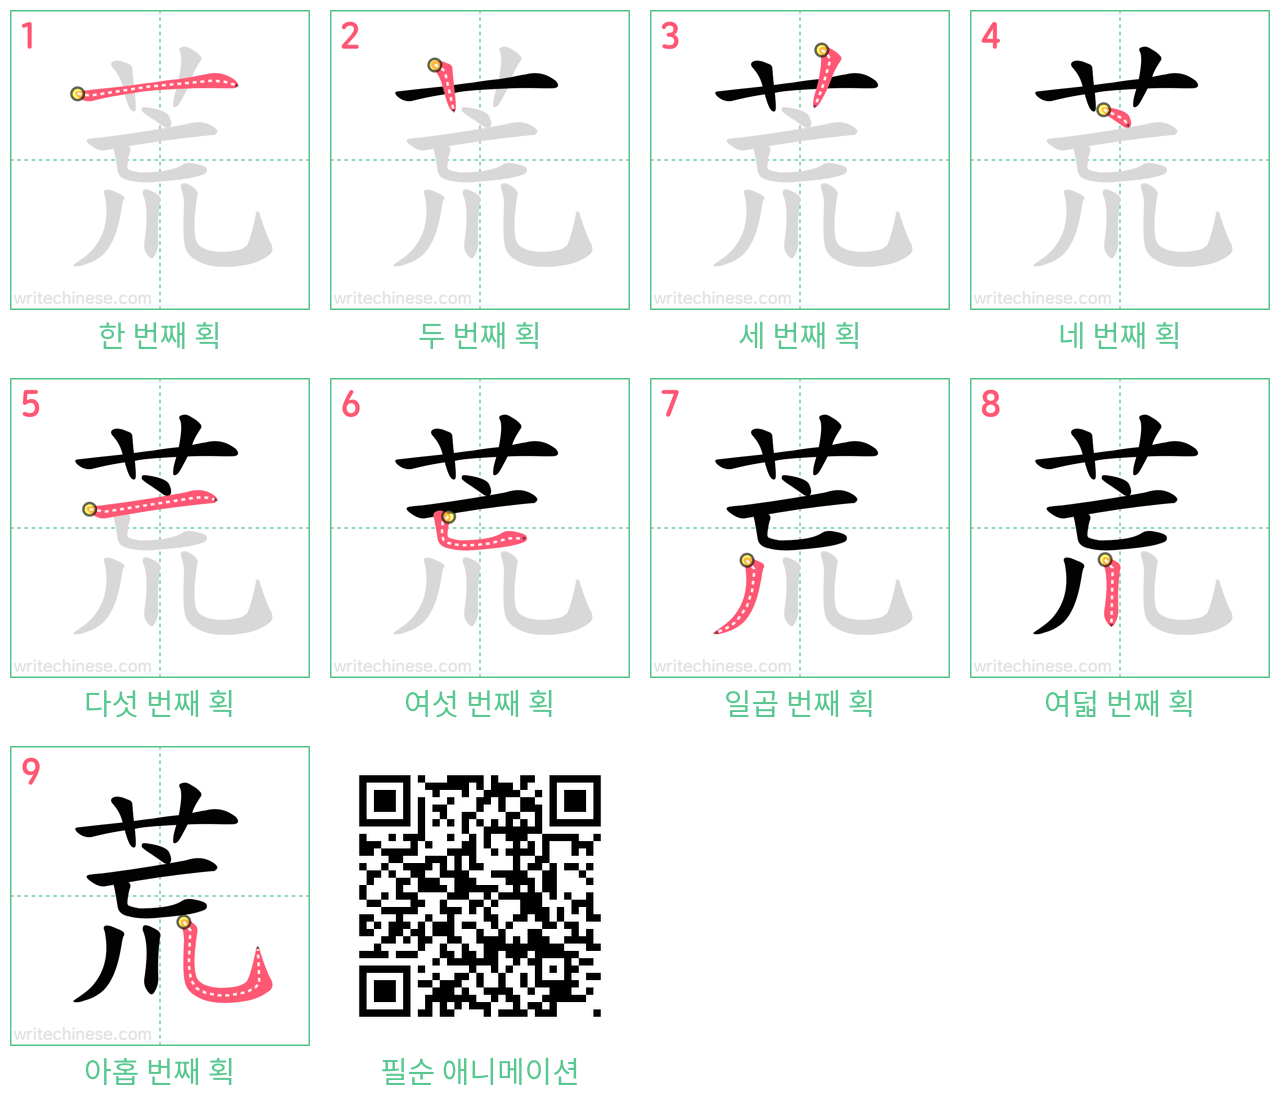 荒 step-by-step stroke order diagrams